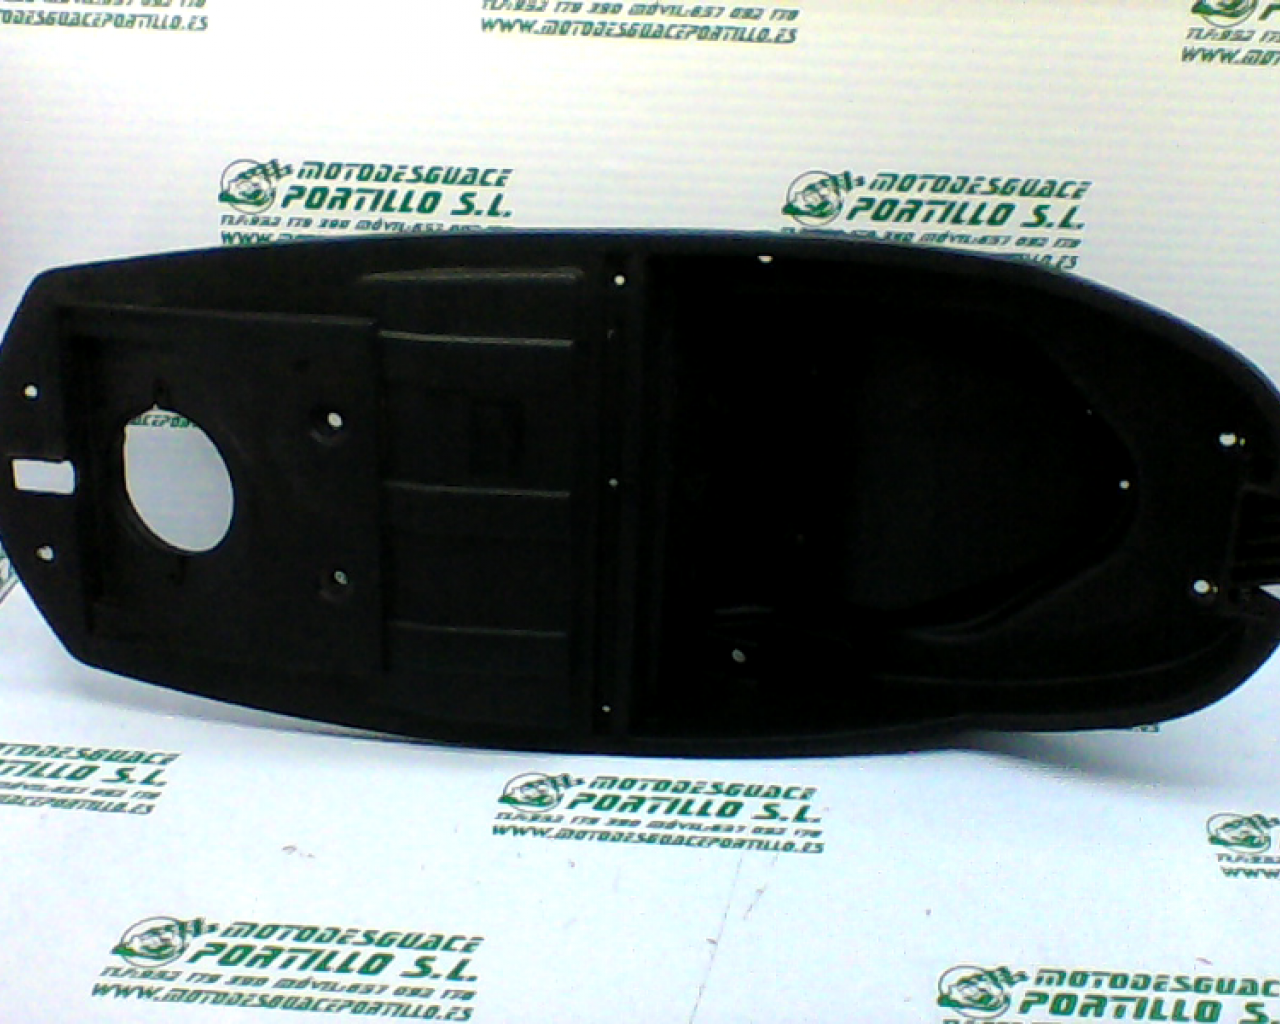 Porta-casco Keeway Outlook 125 (2009-2010)